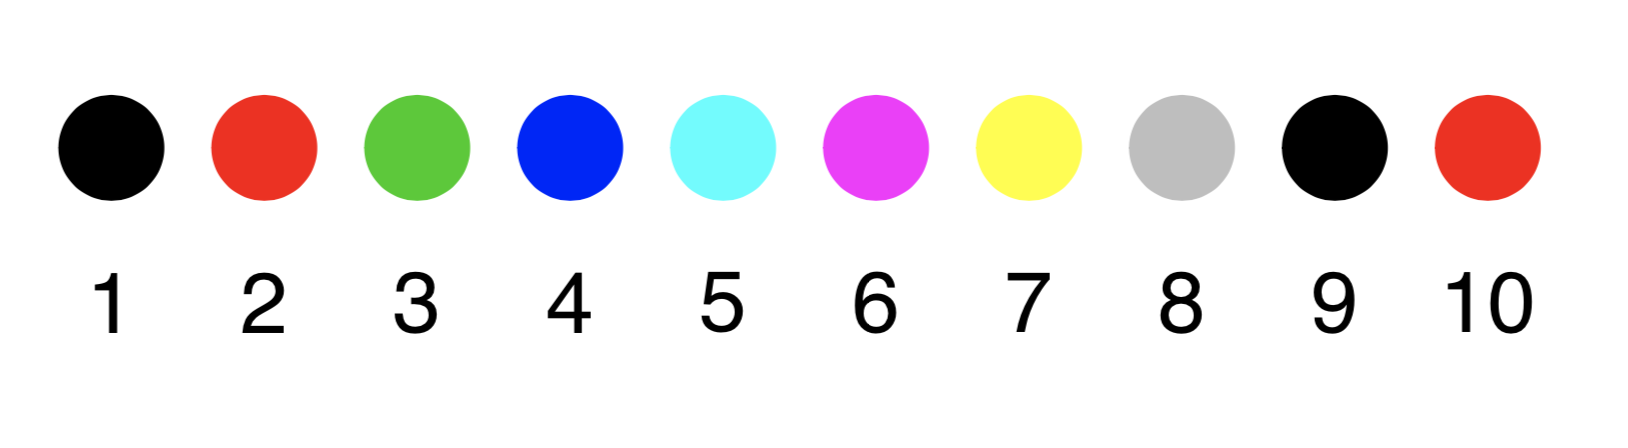 The numeric color palette